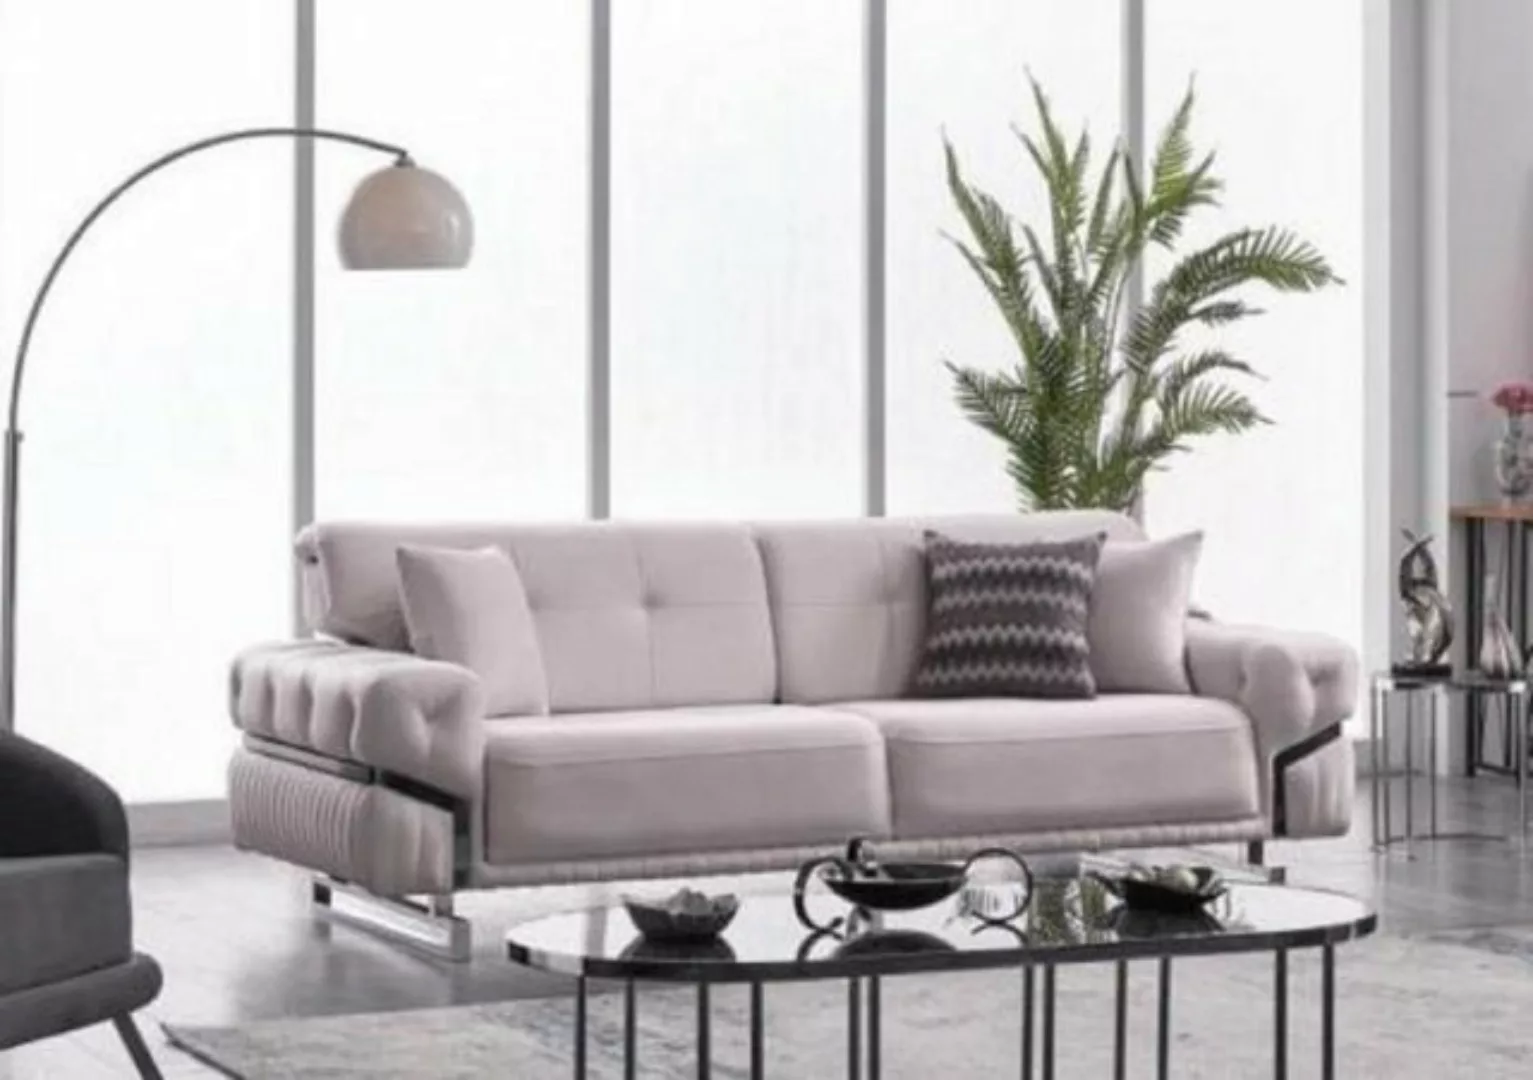 JVmoebel 3-Sitzer 3-Sitzer Sofa Wohnzimmermöbel Polstersofa Designermöbel, günstig online kaufen